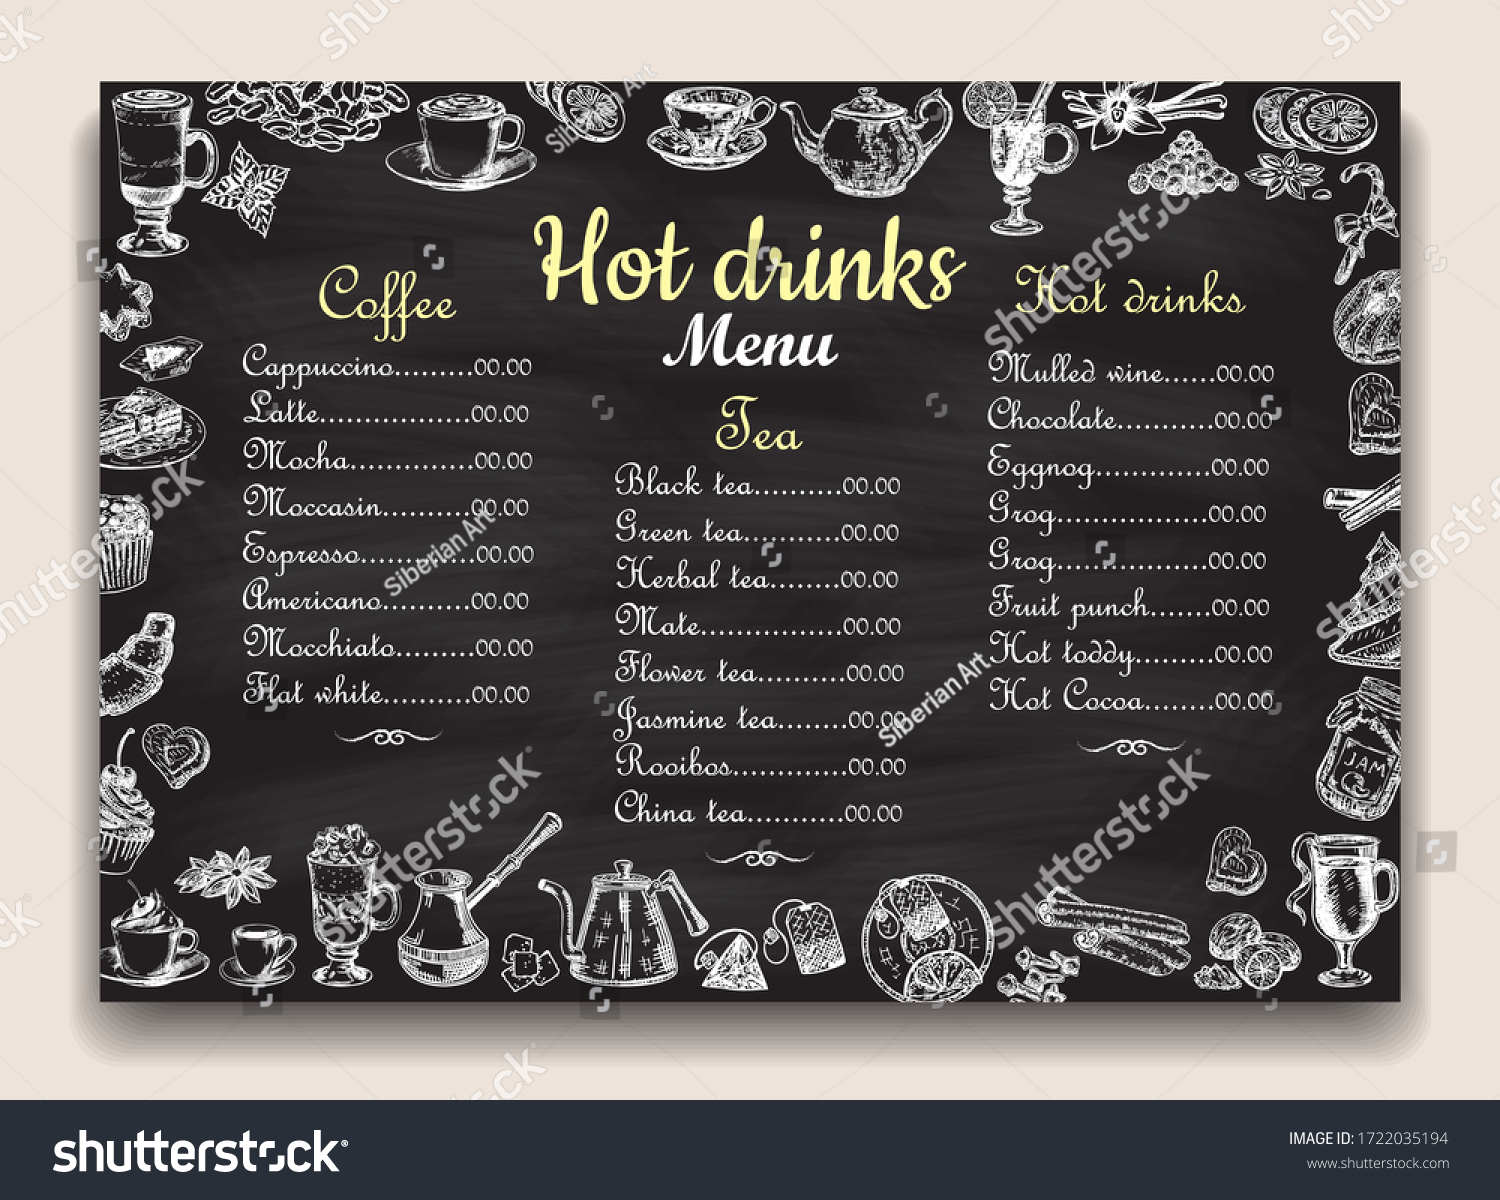 黒板のテンプレートにレストランのホットドリンクメニューリスト カフェ 手描きのお茶 コーヒー デザートに熱い飲み物の名前を付けます のイラスト素材